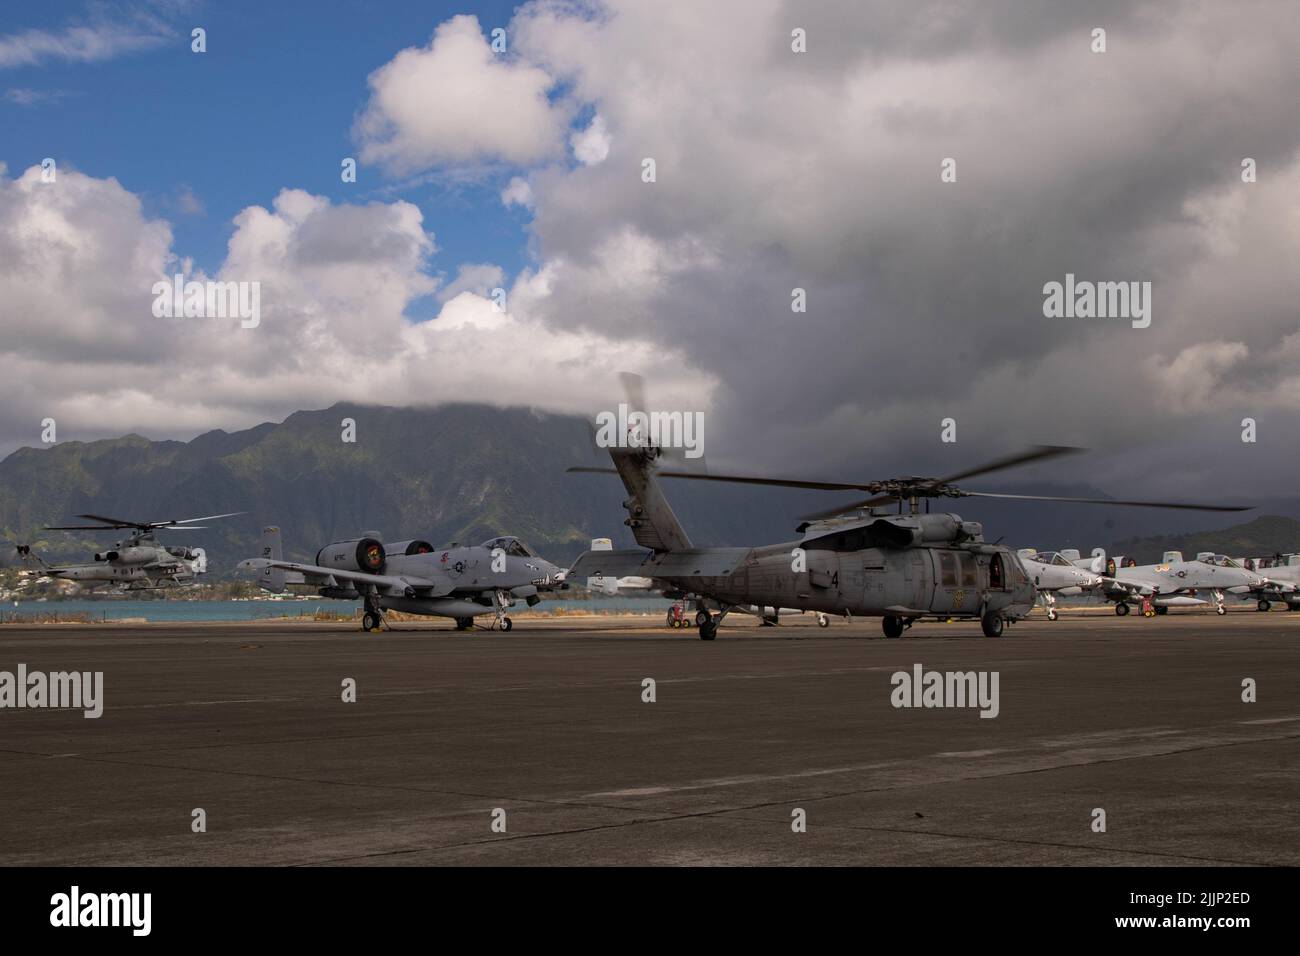 MARINE CORPS AIR STATION KANEOHE BAY, Hawaii (22. Juli 2022) Ein U.S. Marine Corps AH-1 Super Cobra und die U.S. Navy MH-60s Seahawk verlassen Marine Corps Air Station Kaneohe Bay, Hawaii, um an einer Sink Exercise (SINKEX) während des Rim of the Pacific (RIMPAC) 2022 teilzunehmen. RIMPAC-Streitkräfte feuerten während einer SINKEX auf die stillgelegte ehemalige USS Denver (LPD 9), Juli 22, und versenkten diese, um sich in der Taktik zu beherrschen, zielte und feuerte live gegen ein Oberflächenziel auf See. SINKEX-Behälter werden einem zertifizierten Reinigungsprozess durchlaufen, einschließlich der Entfernung aller umweltschädlichen Materialien einschließlich Müll, f Stockfoto